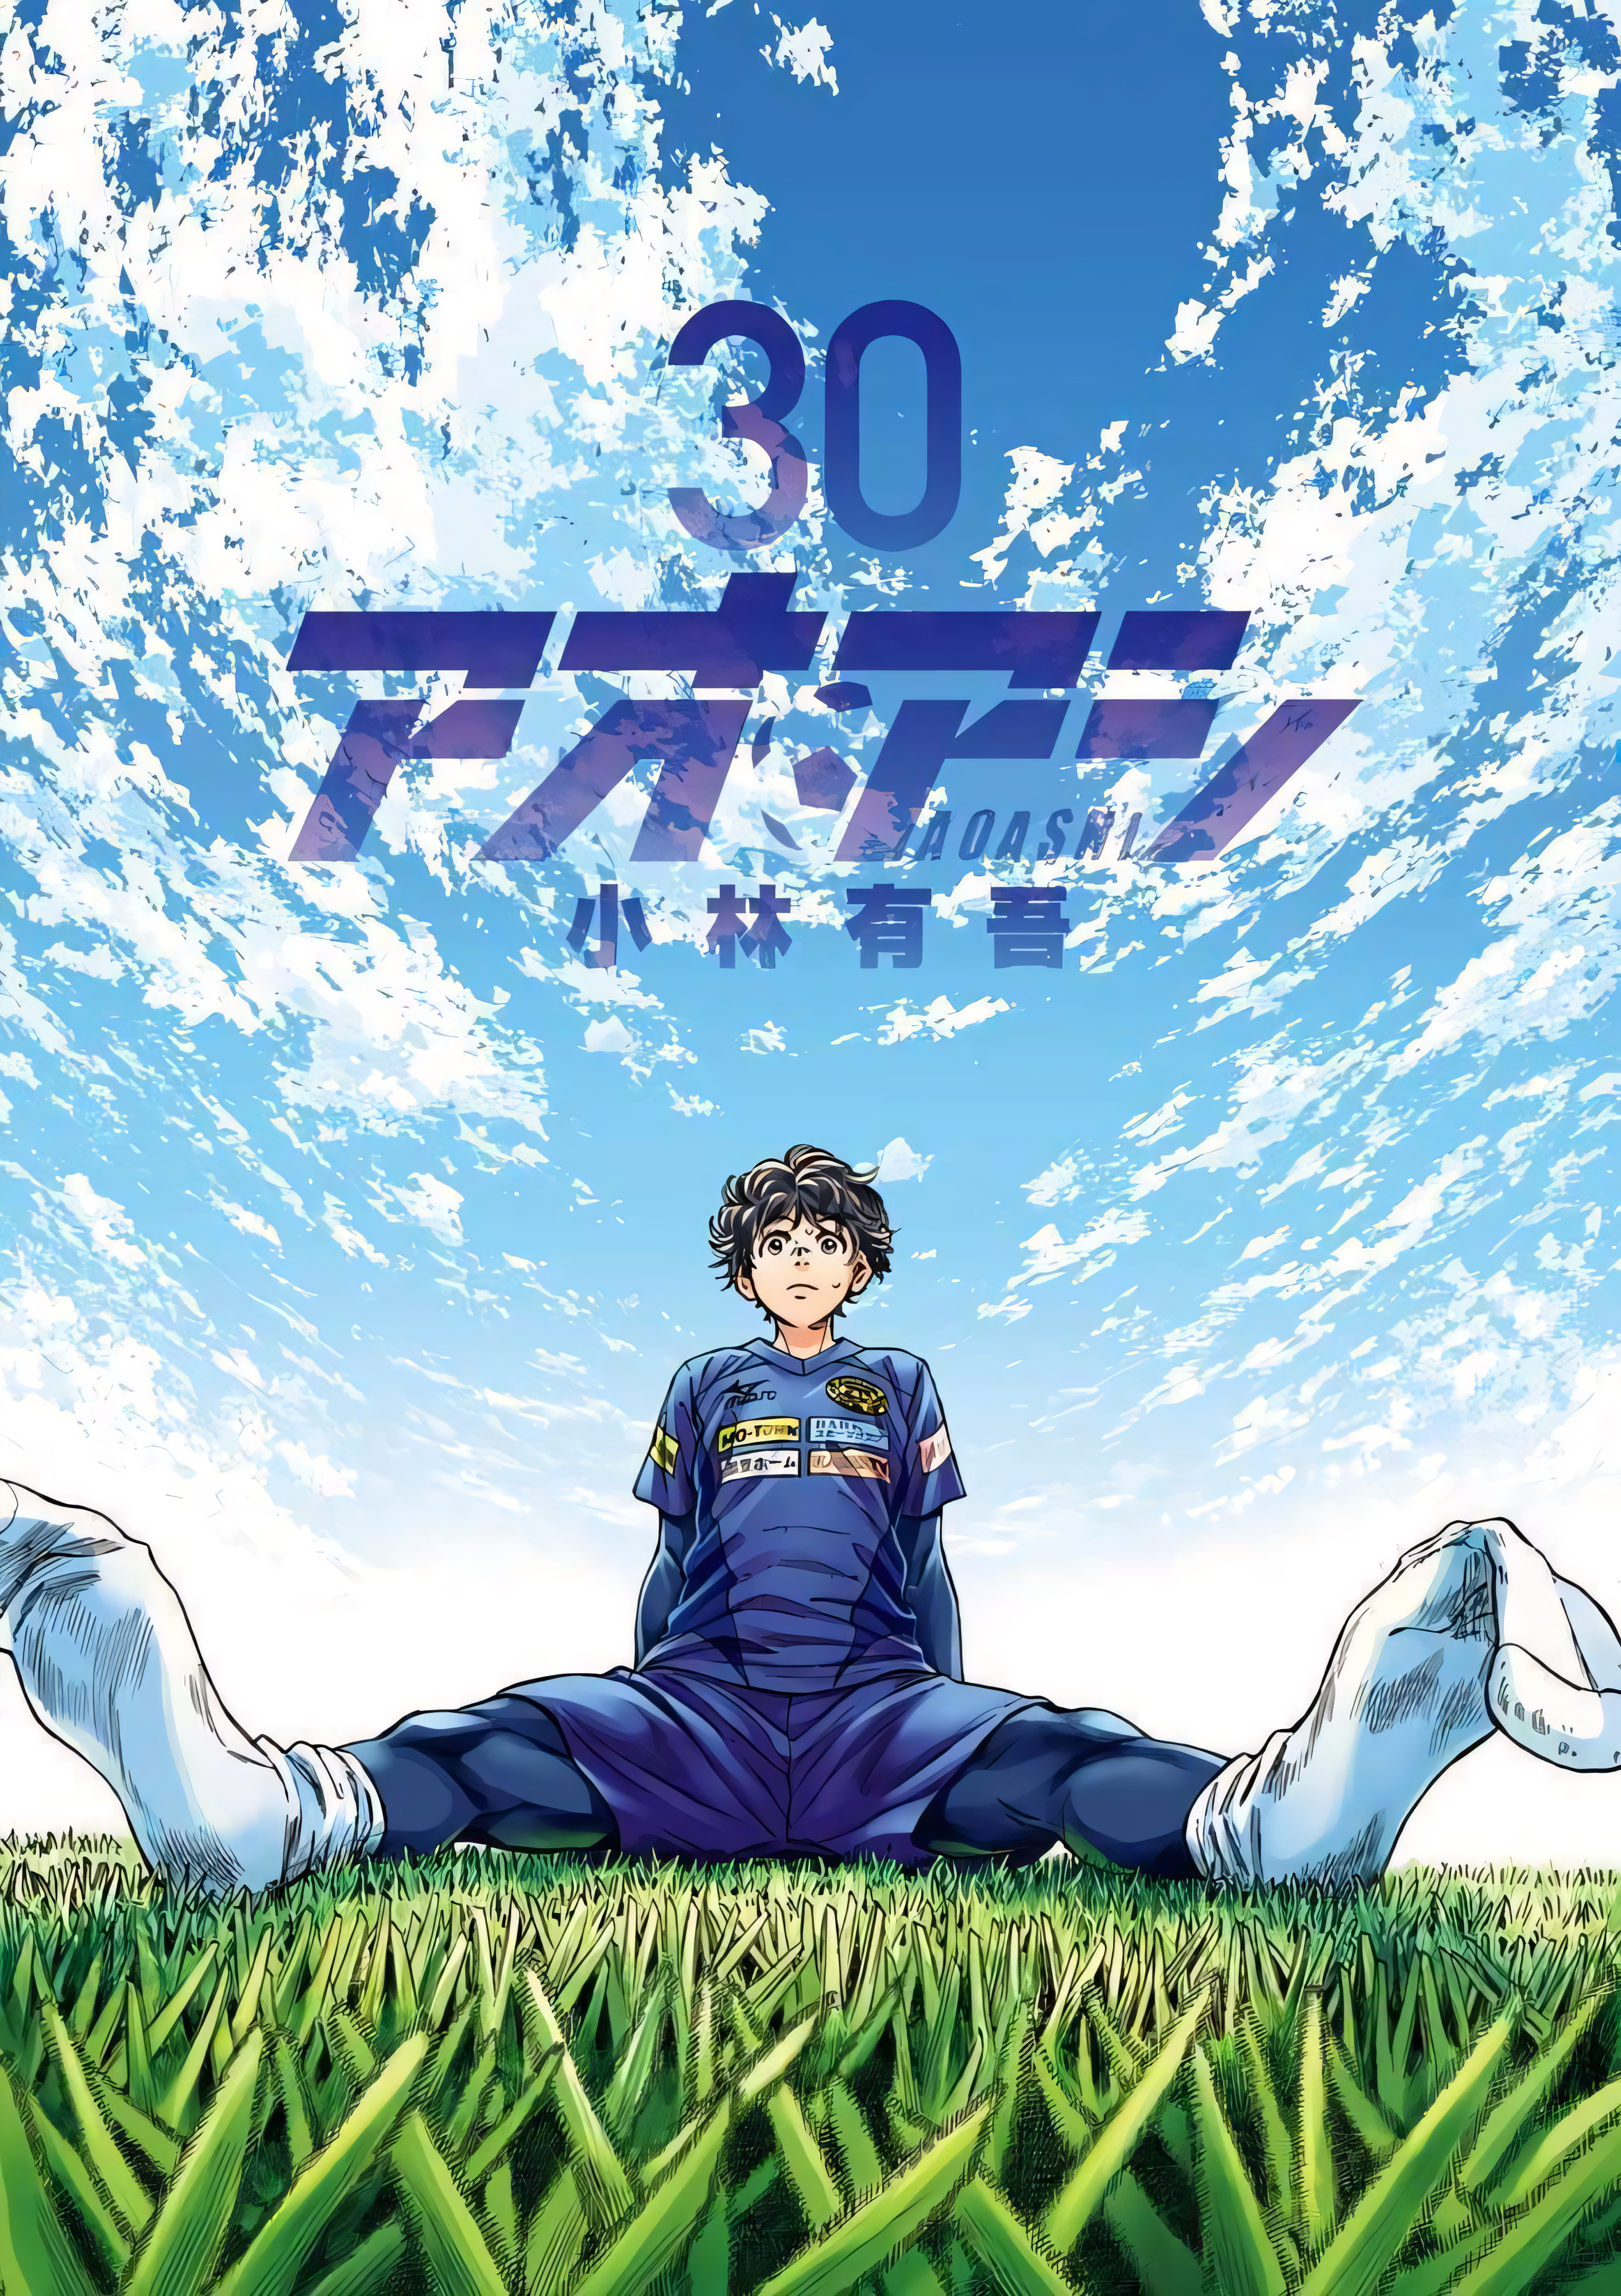 Ao Ashi, Manga Recommendation of the Week - Anime Ignite